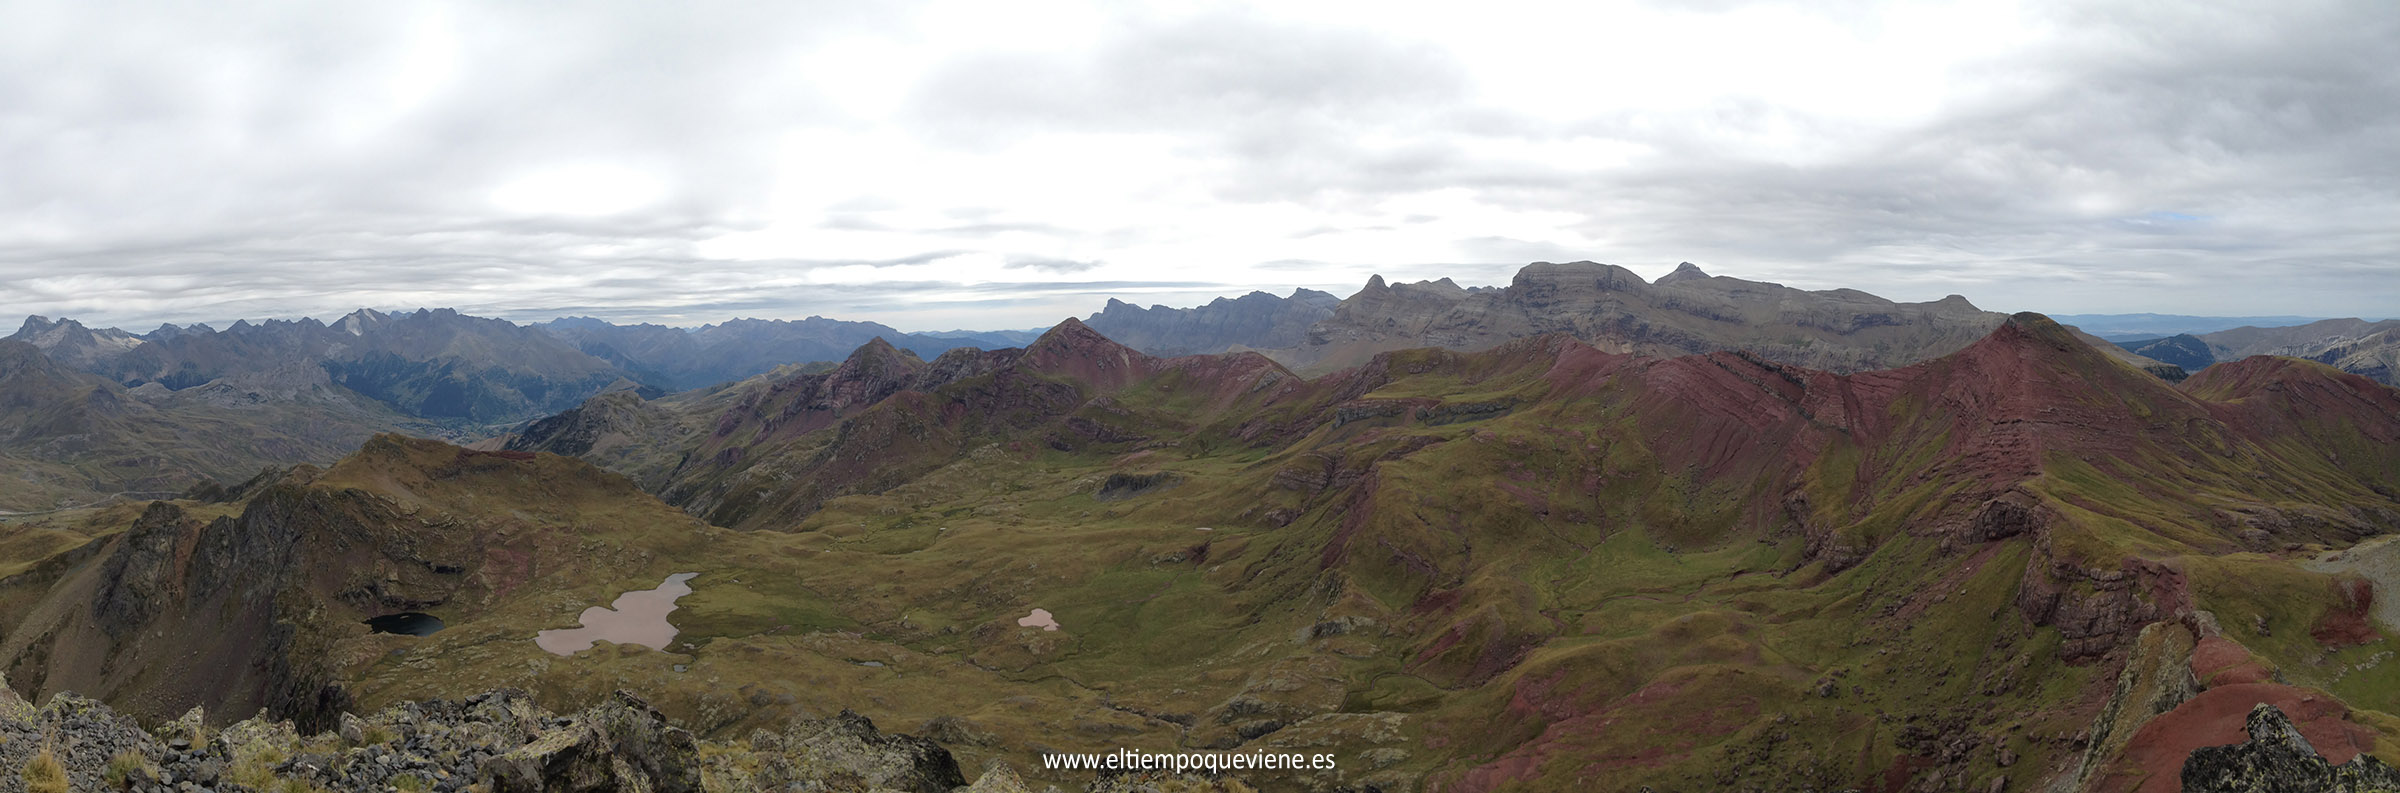 Cresta por la que aremos el resto de picos (de derecha a izquierda): Pico Vértice de Anayet, Pico Garmo de Izas, Pico Arroyeras y Pico de Culivillas